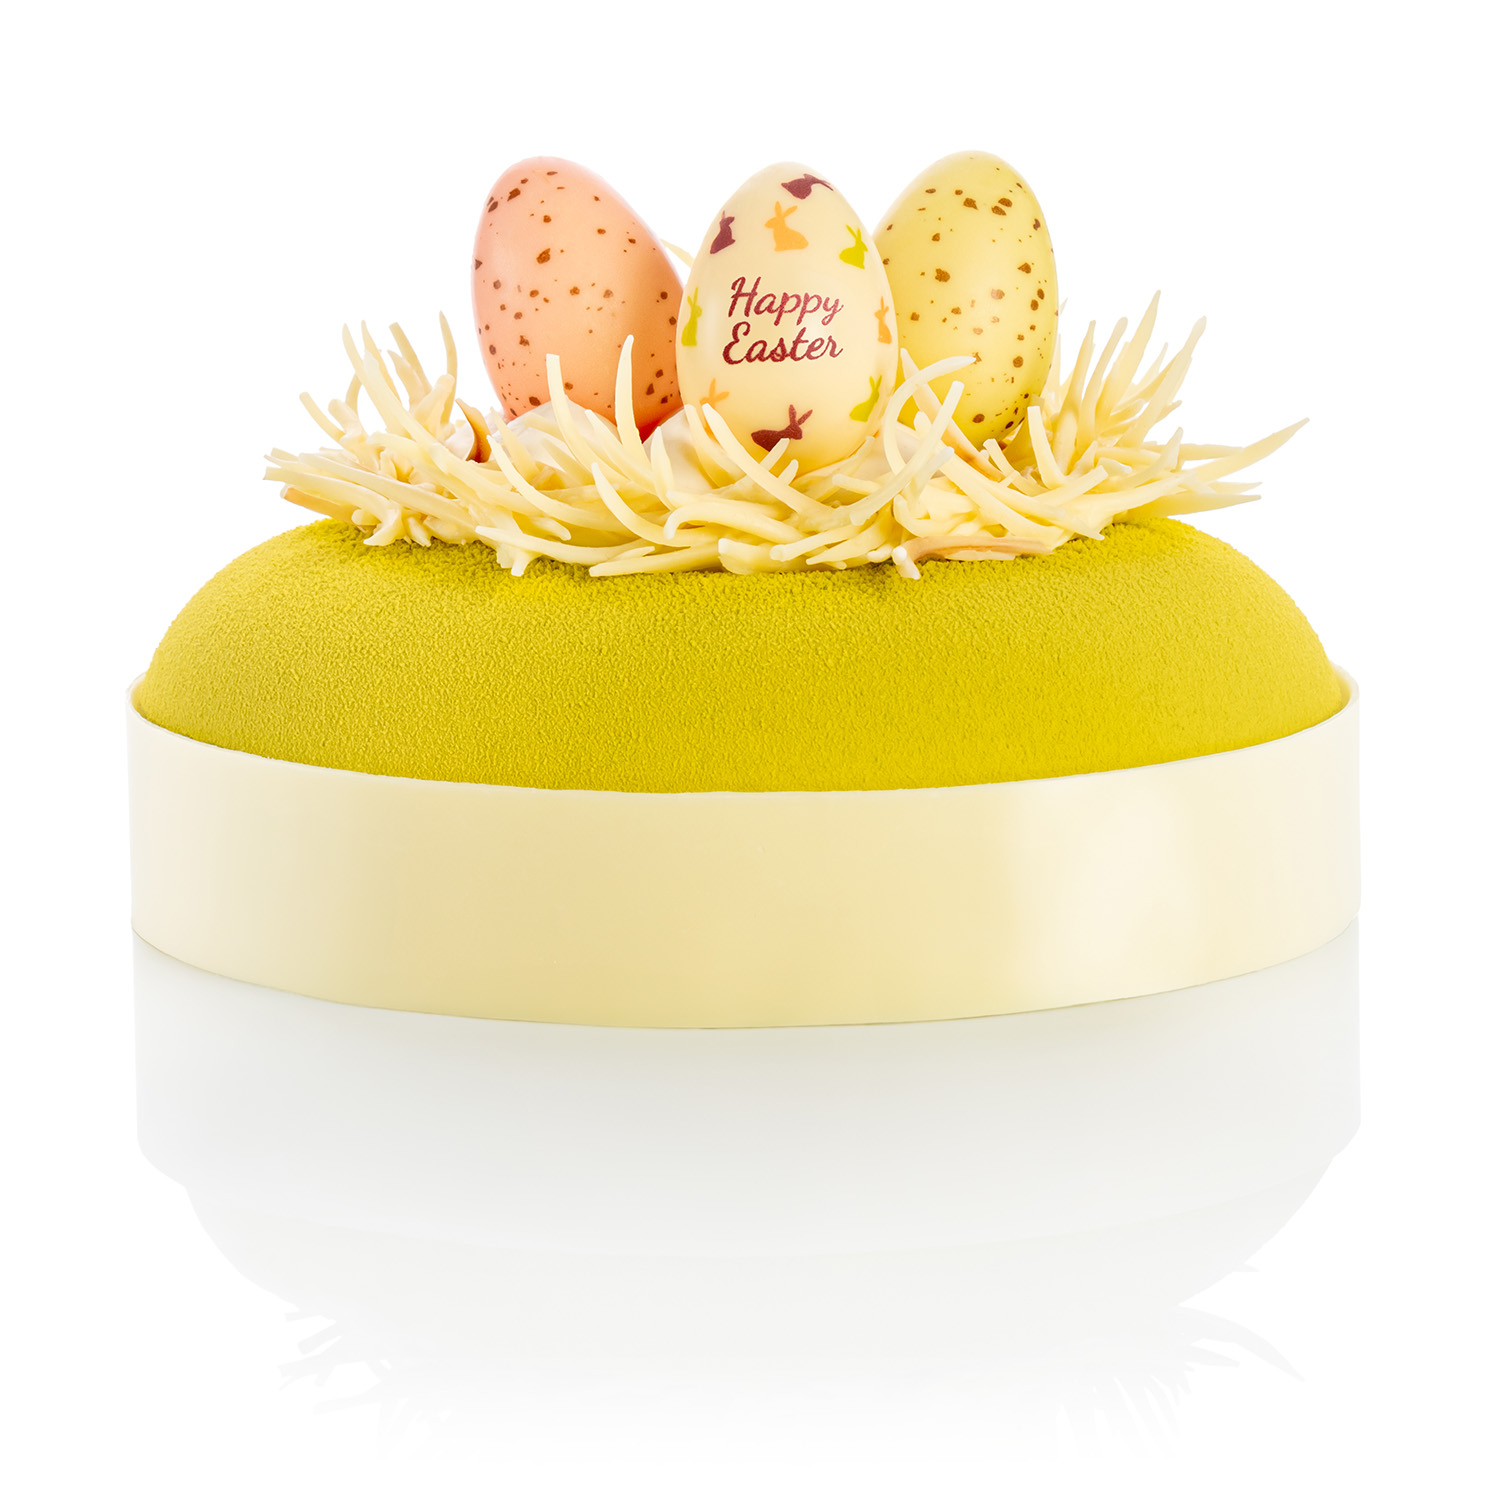 Wielkanoc, słodkie inspiracje – torty, ciasta i monoporcje